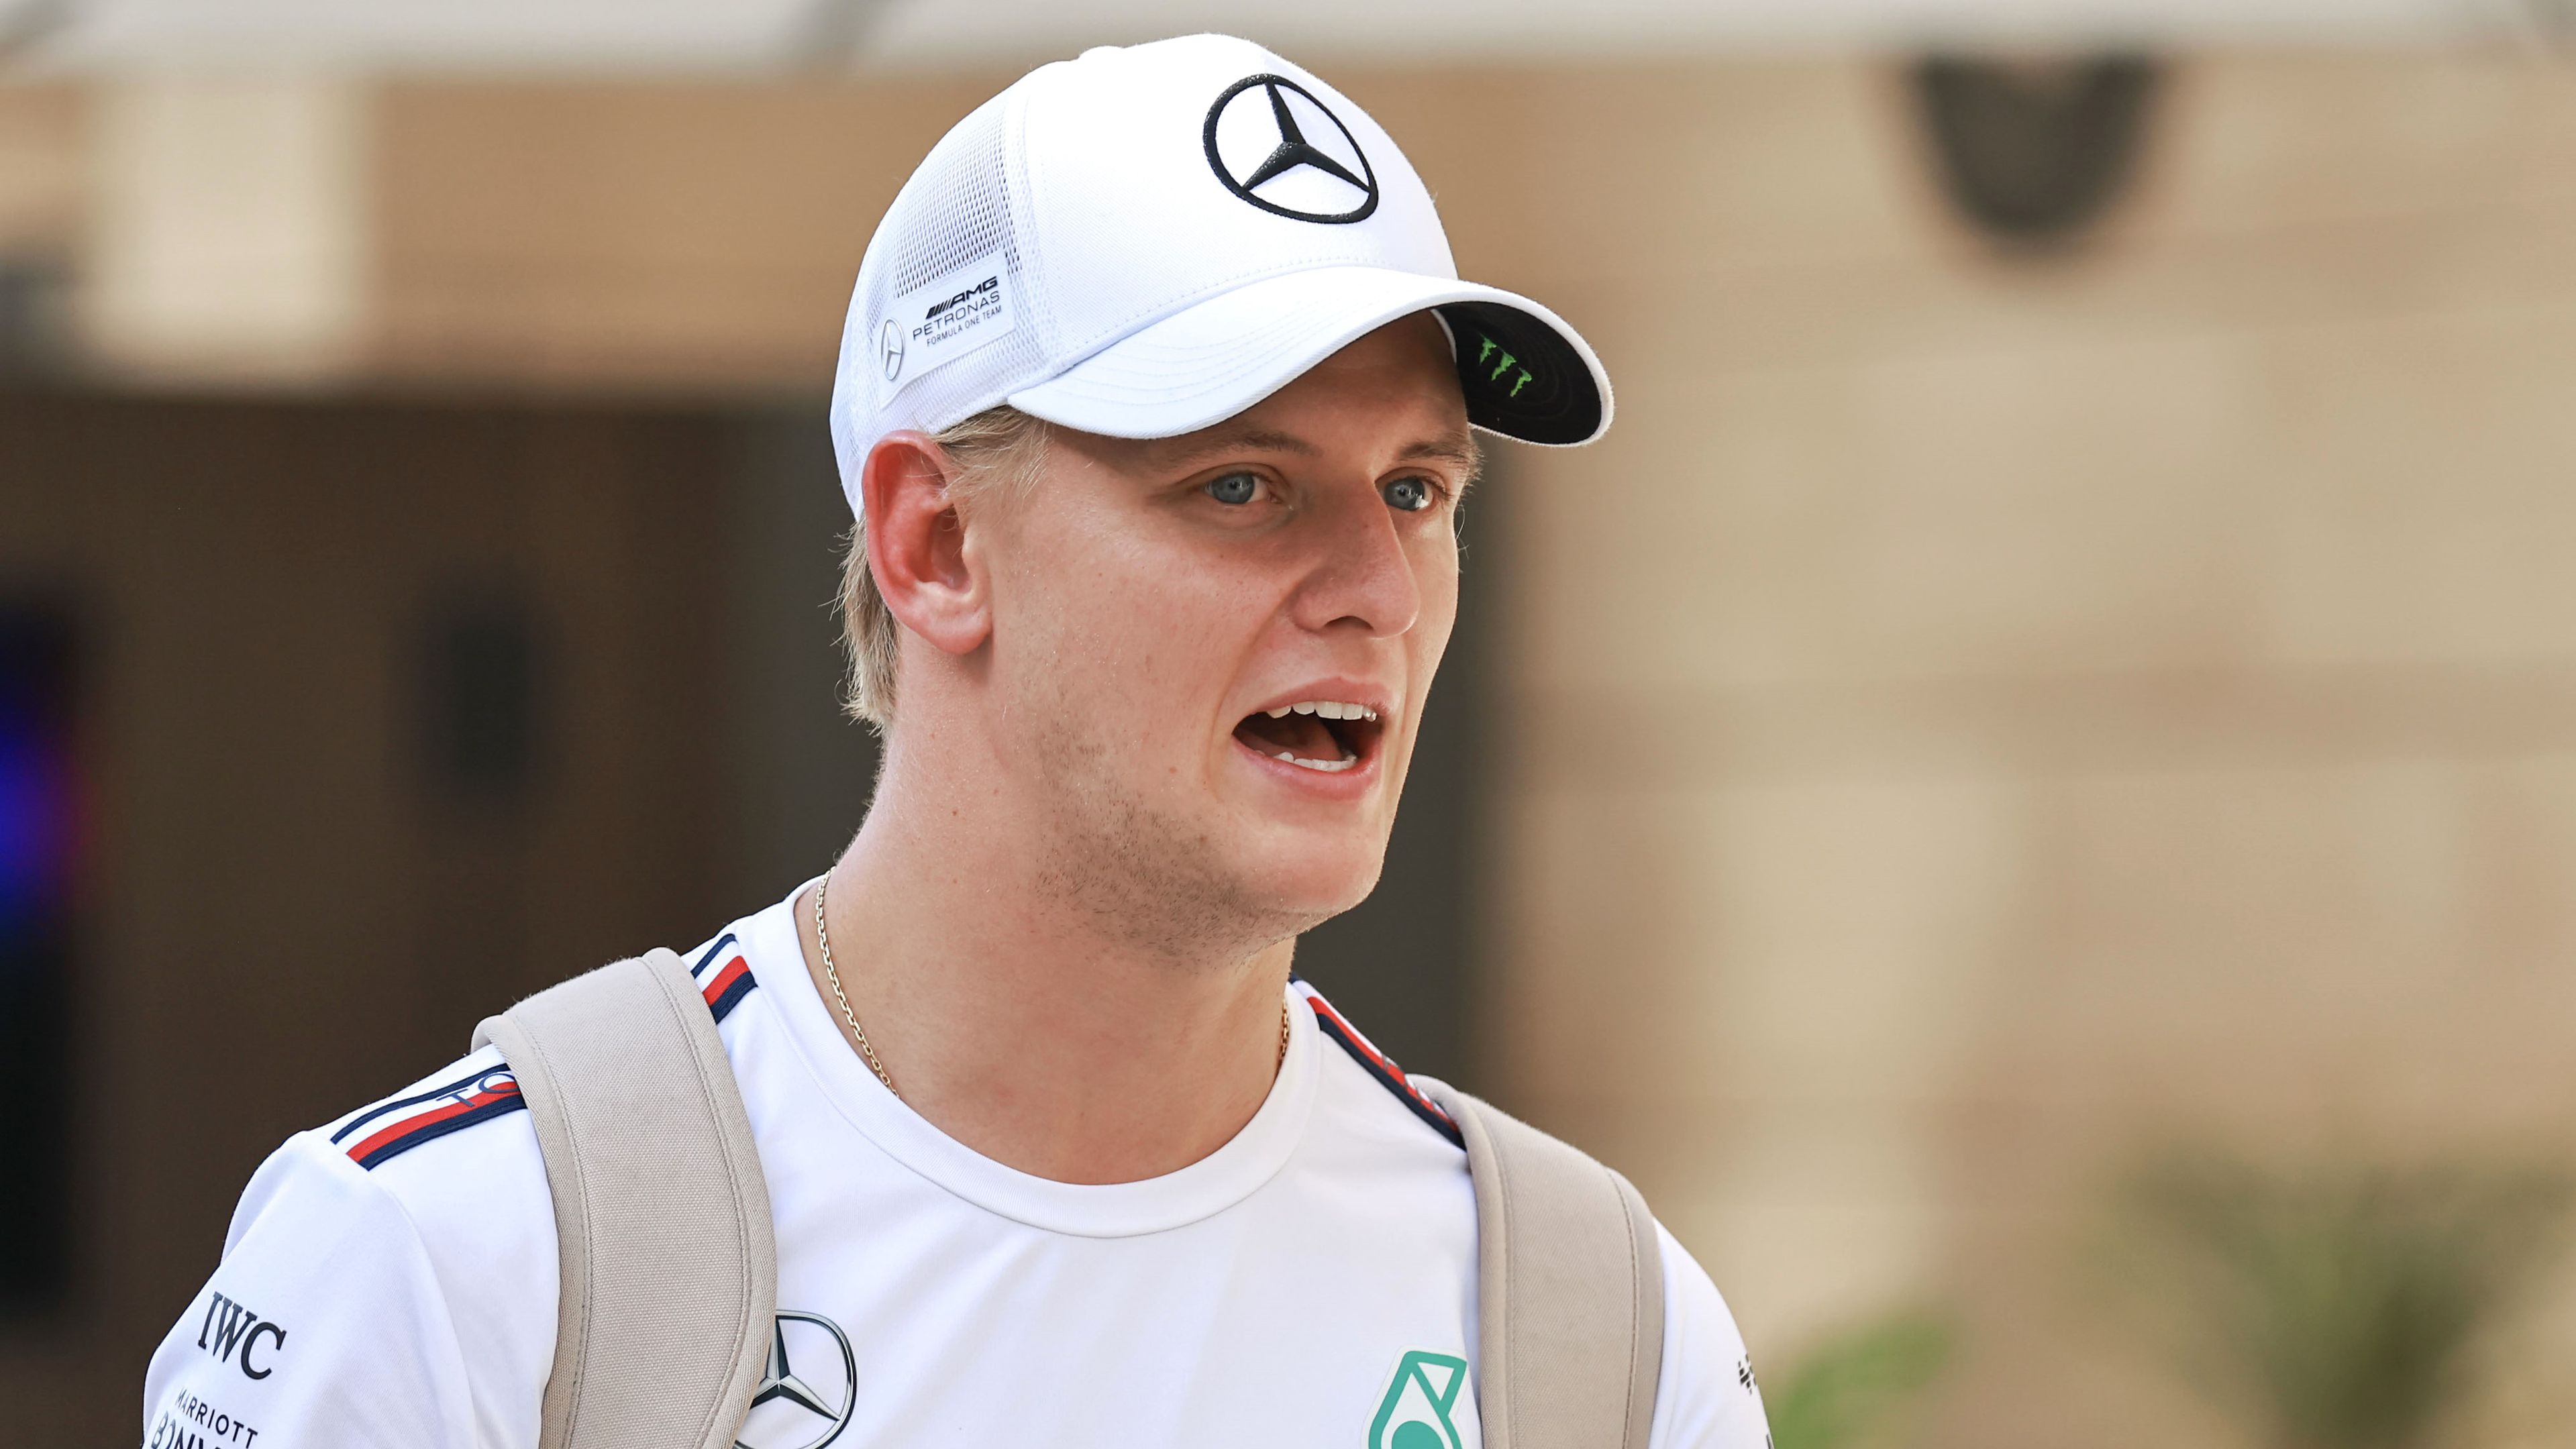 Mick Schumacher visszatér, újra F1-es autóba ül